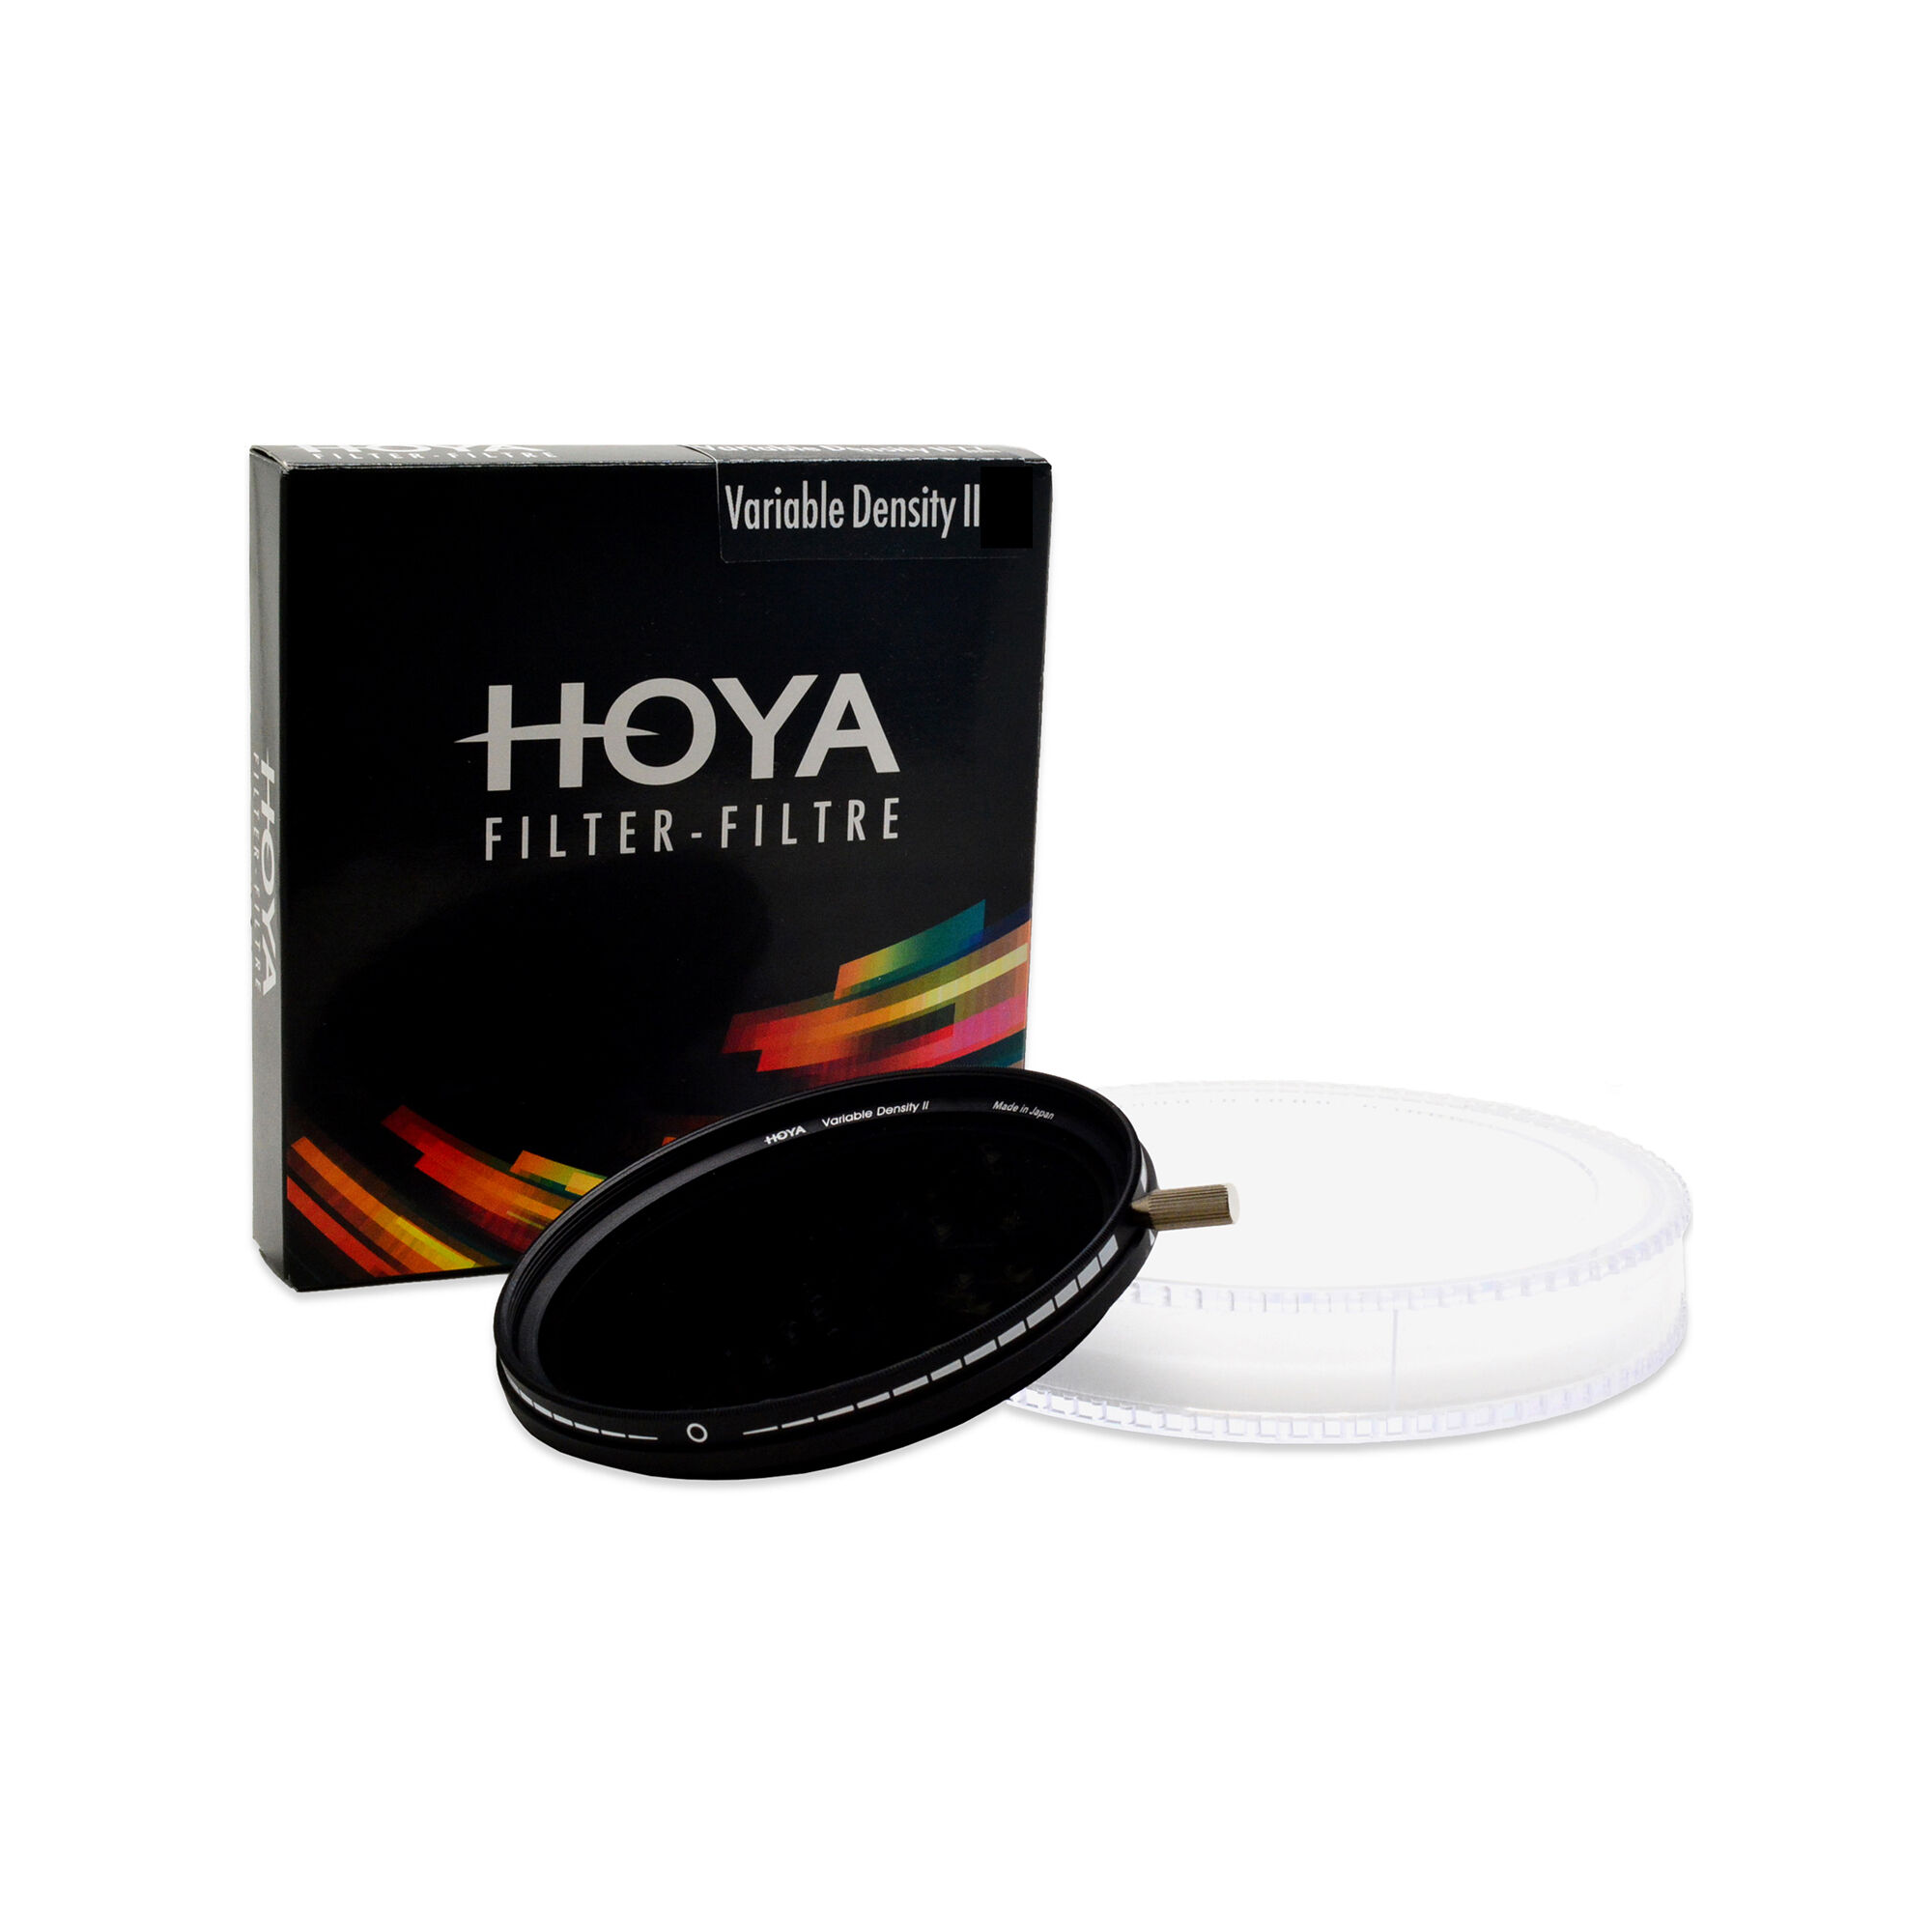 Hoya Variable Density II 77mm